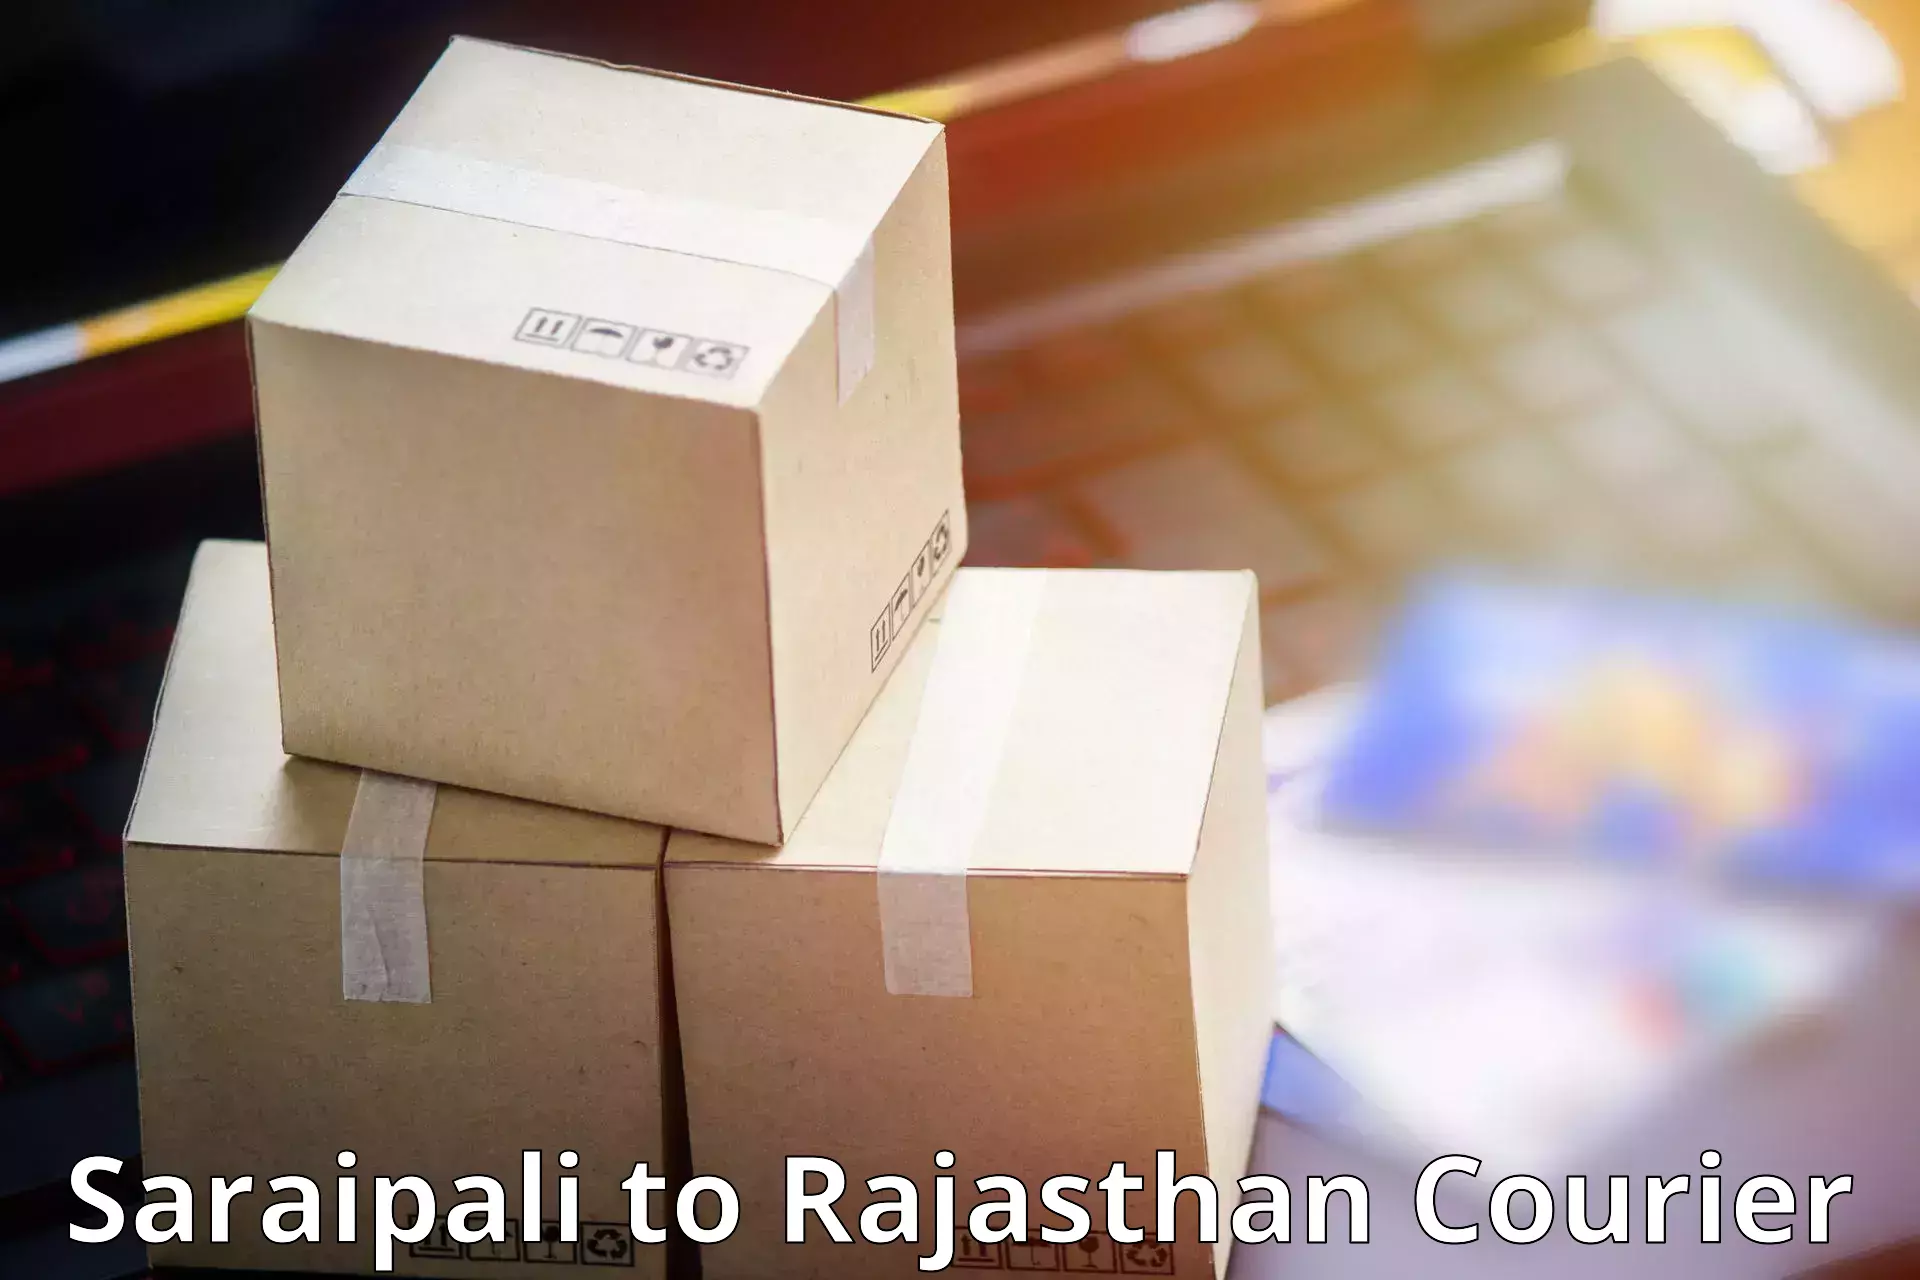 Digital courier platforms Saraipali to Ajeetgarh